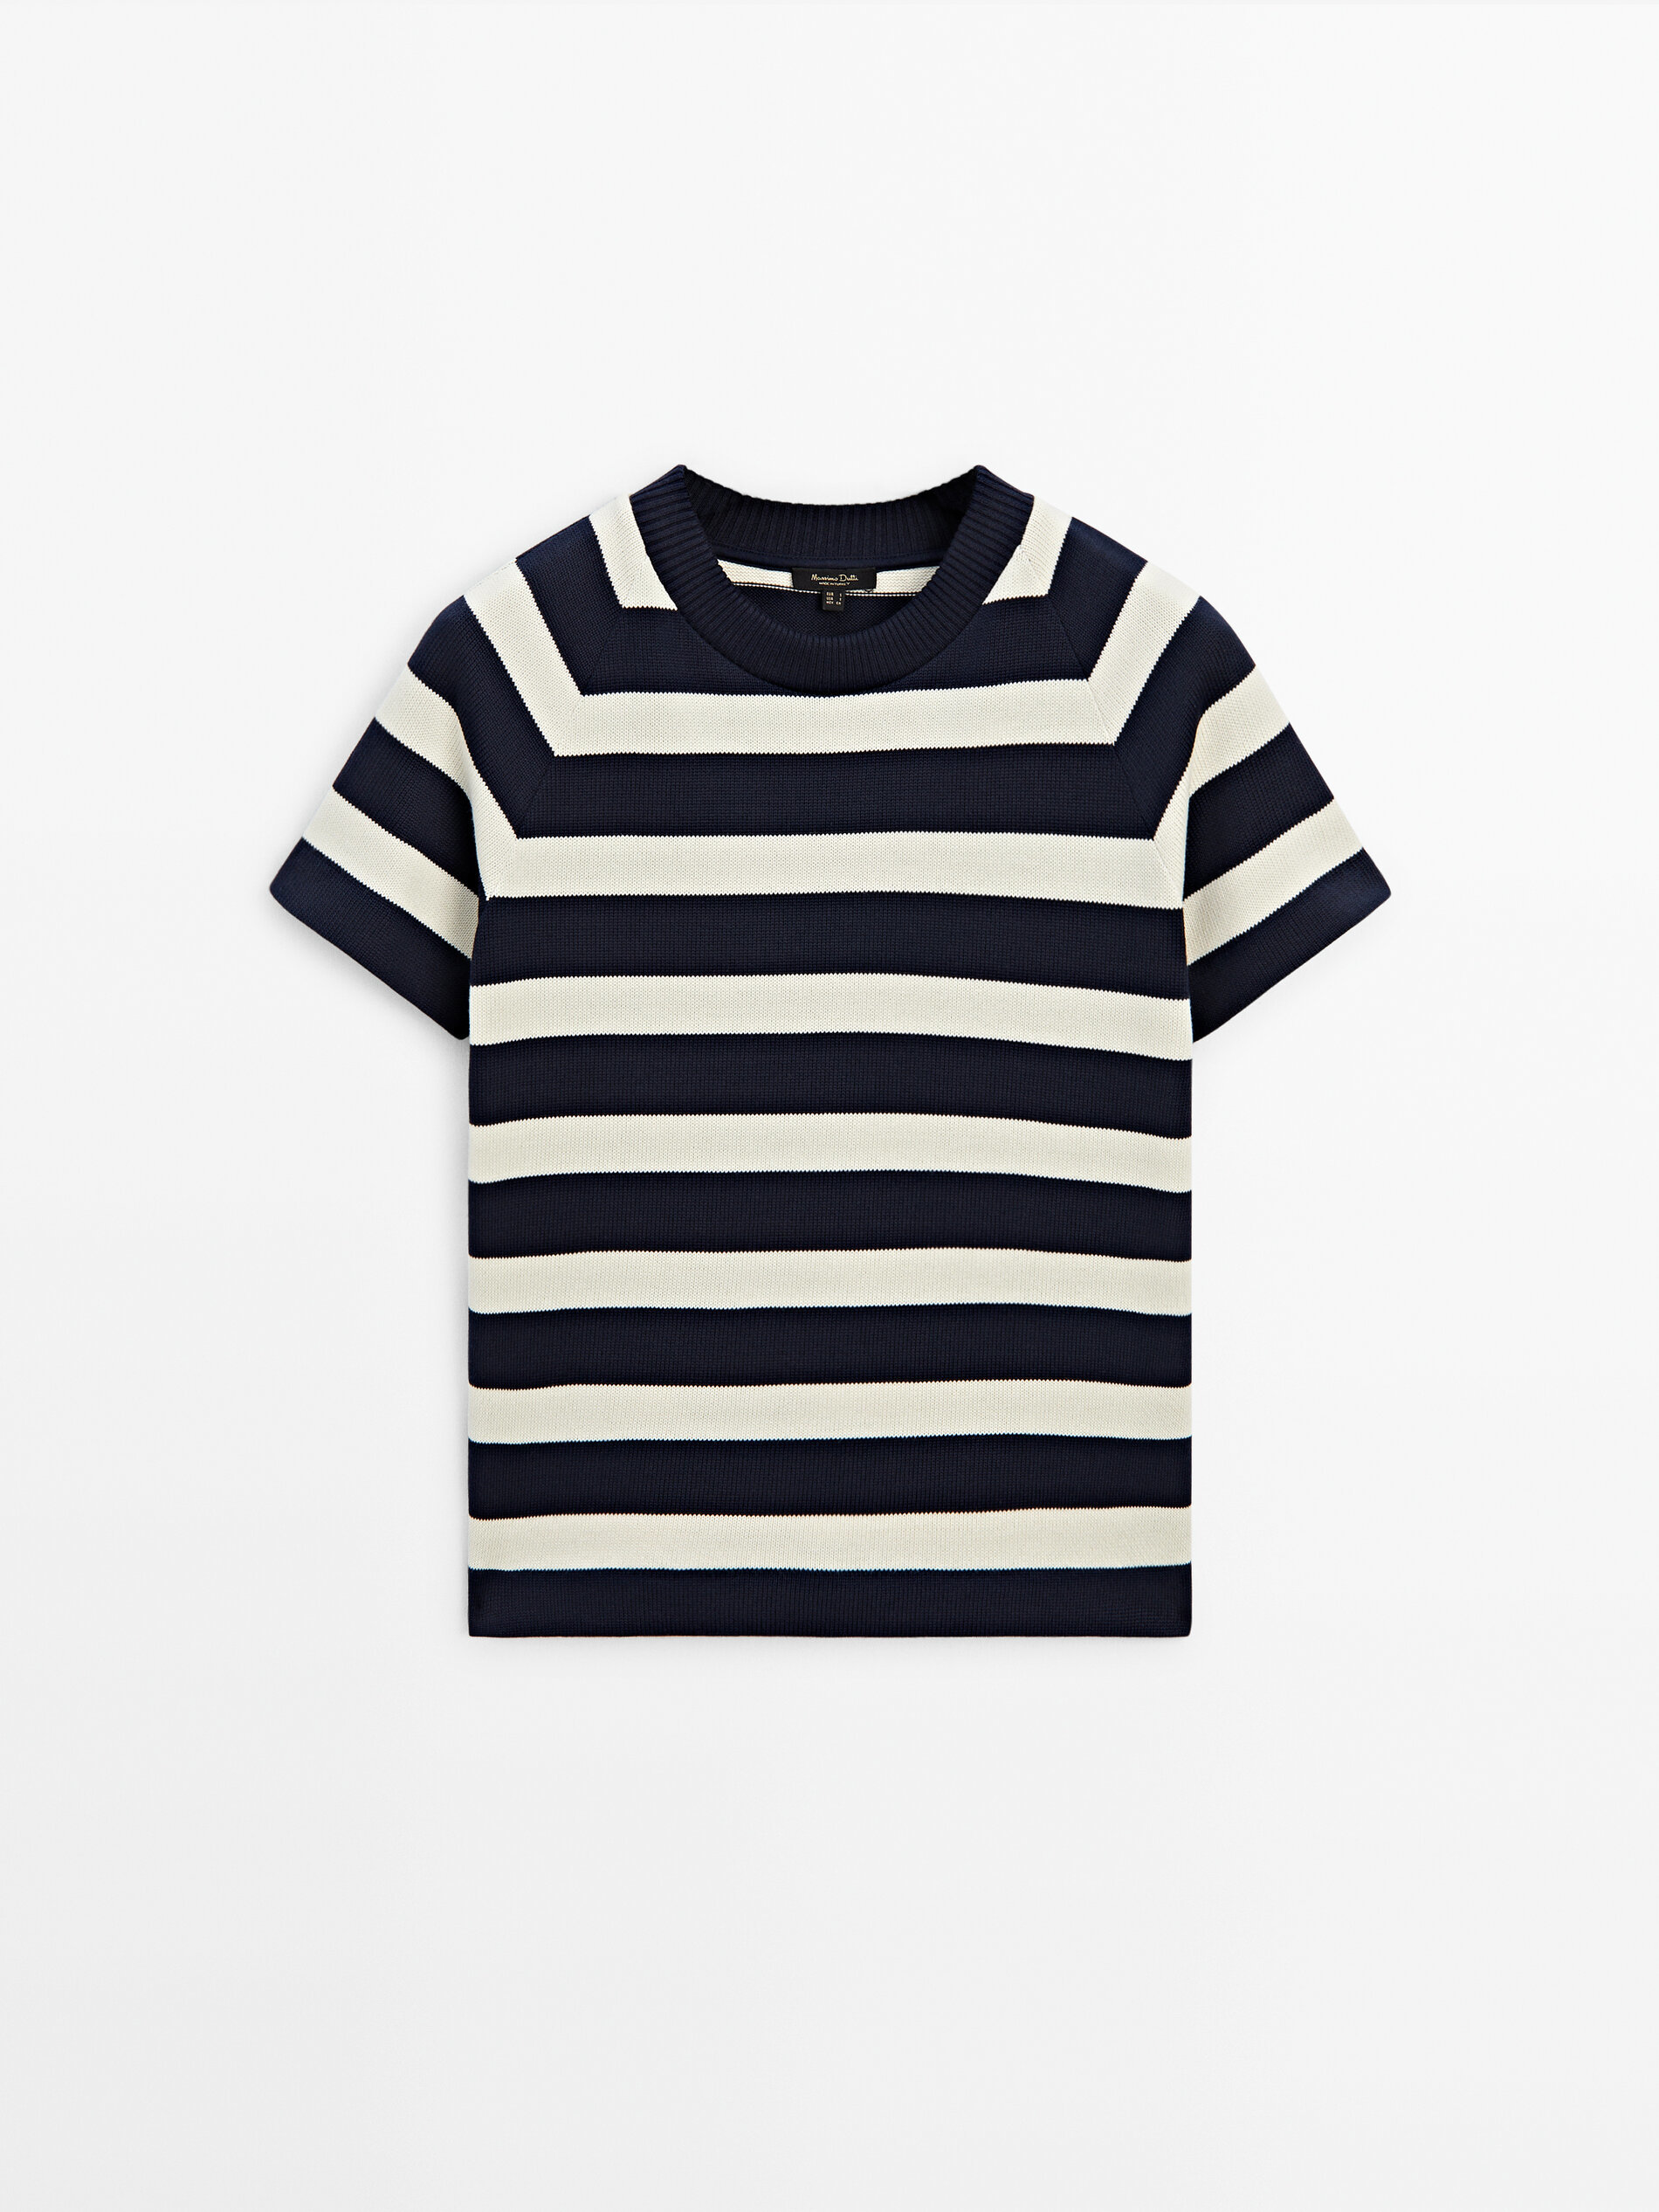 Ponte una camiseta de rayas marineras con acabados acanalados con estilo, de la mano de Massimo Dutti